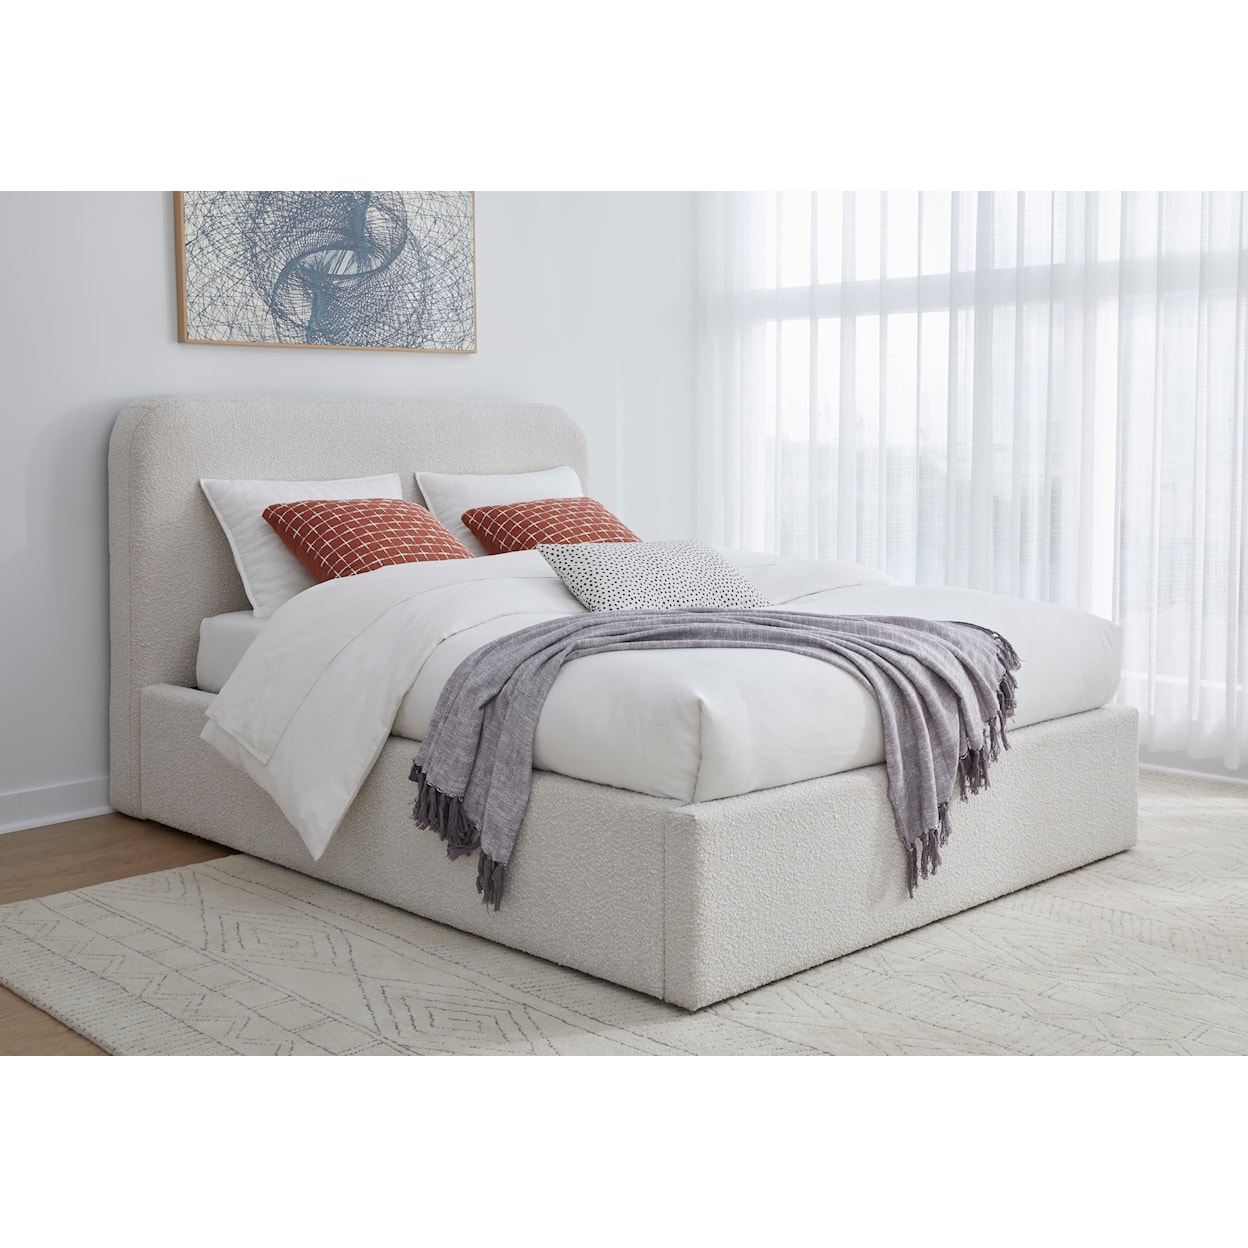 Modus International Off-White King Upholstered Platform Bed